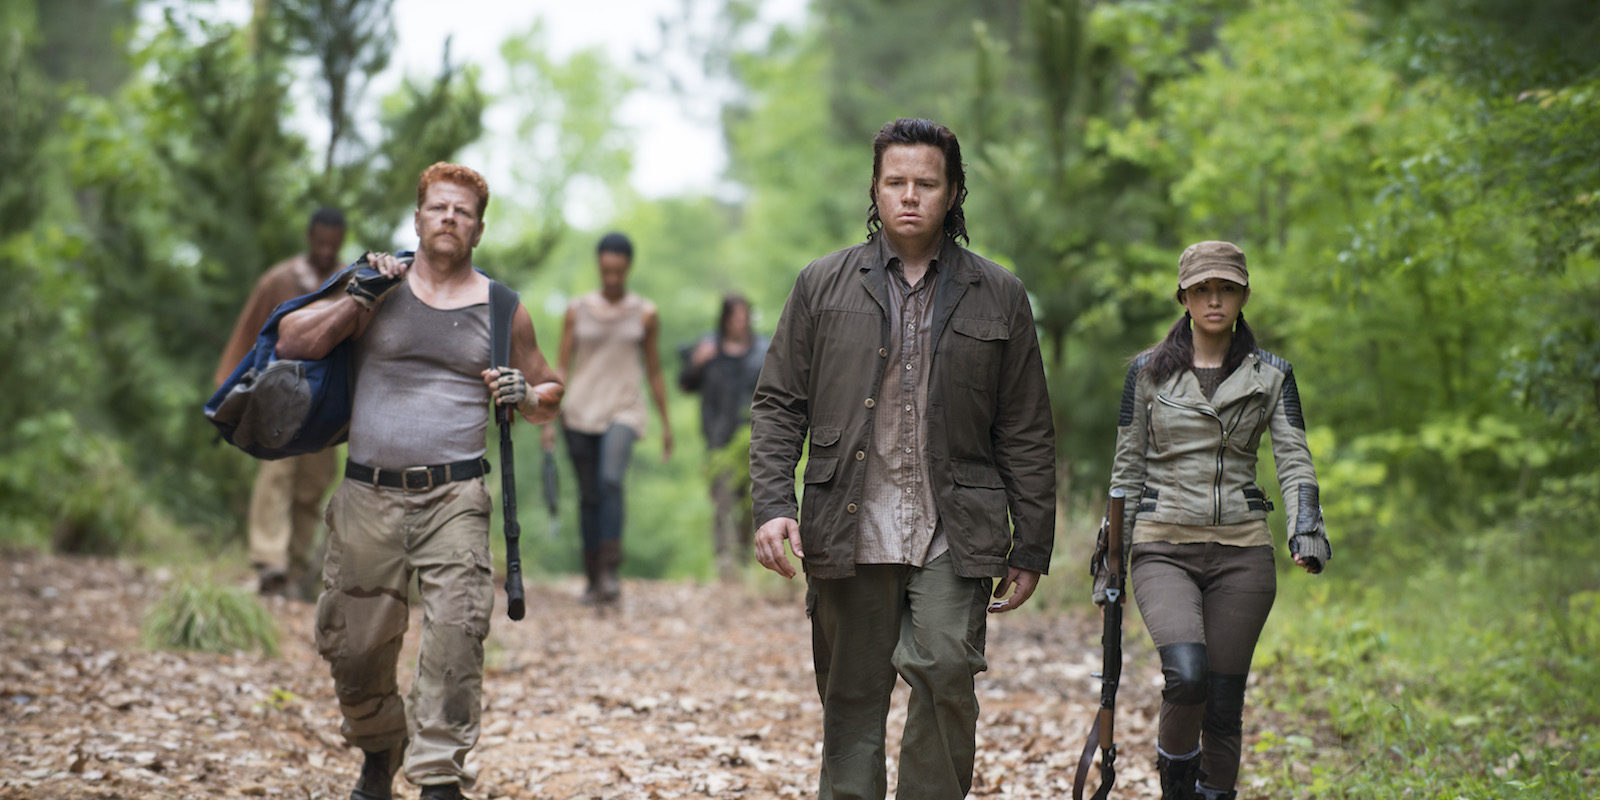 Josh McDermitt, de 'The Walking Dead', abandona las redes sociales al recibir amenazas de muerte